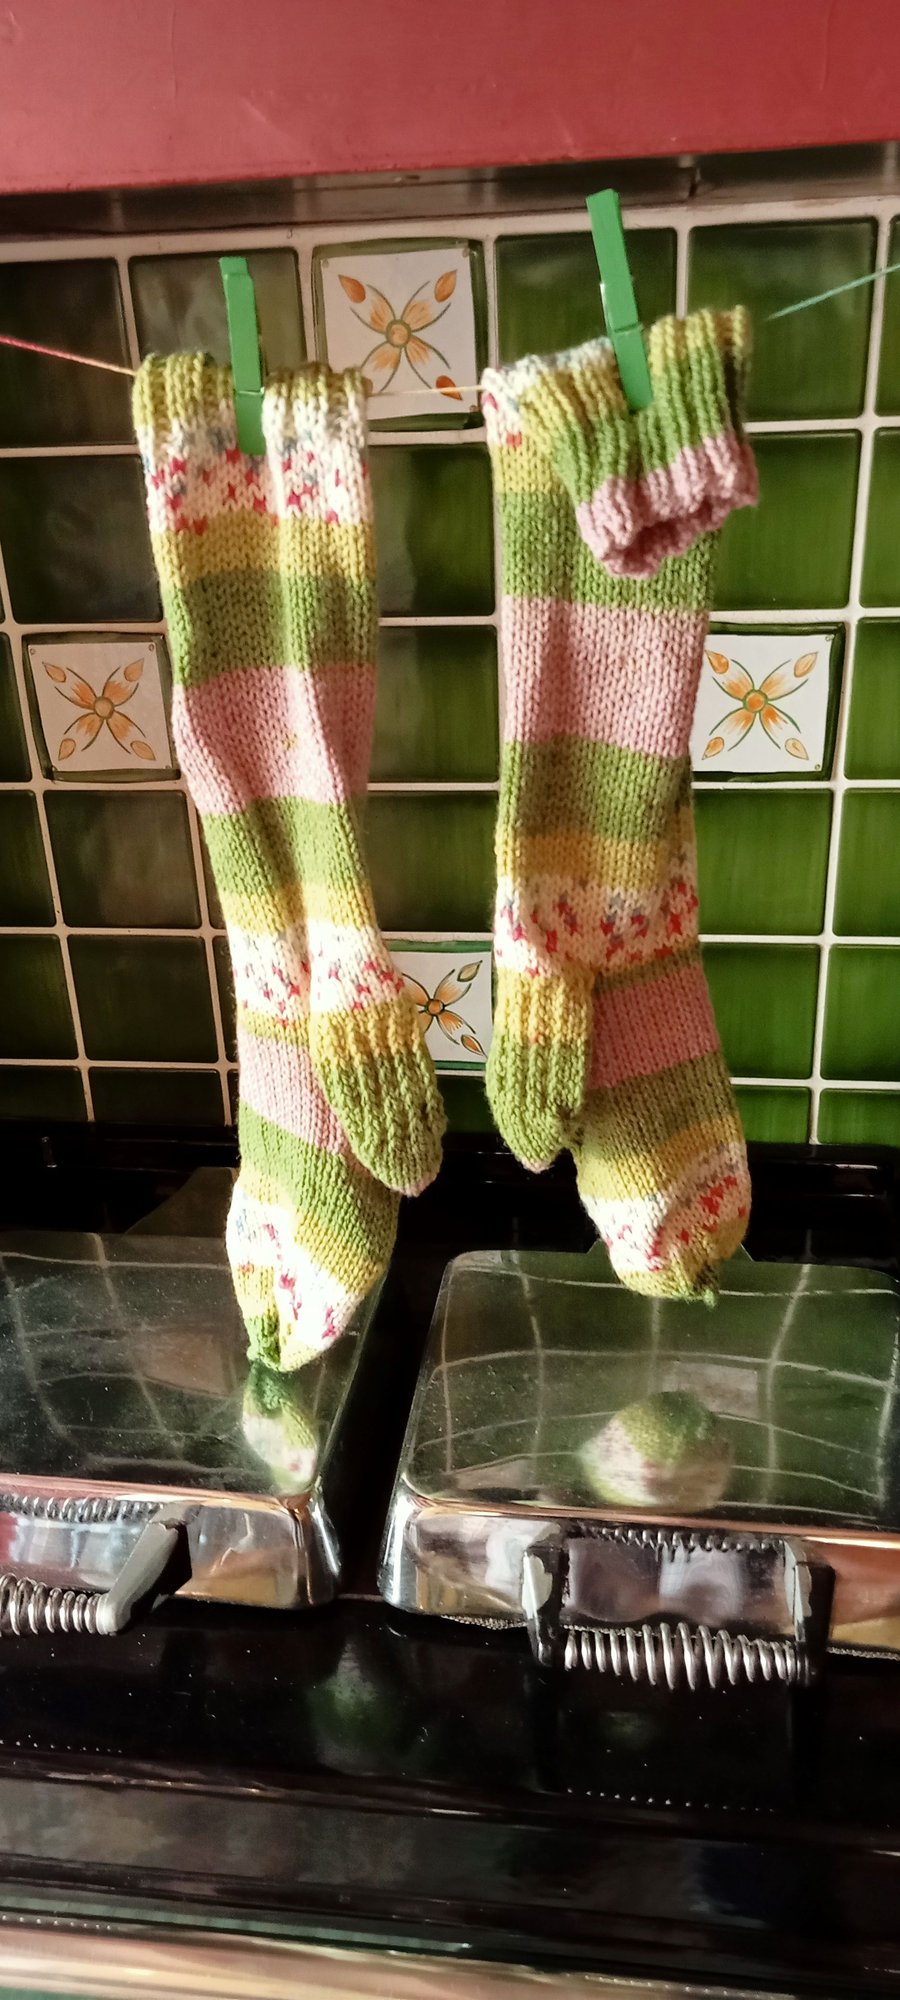 Hand-knitted socks